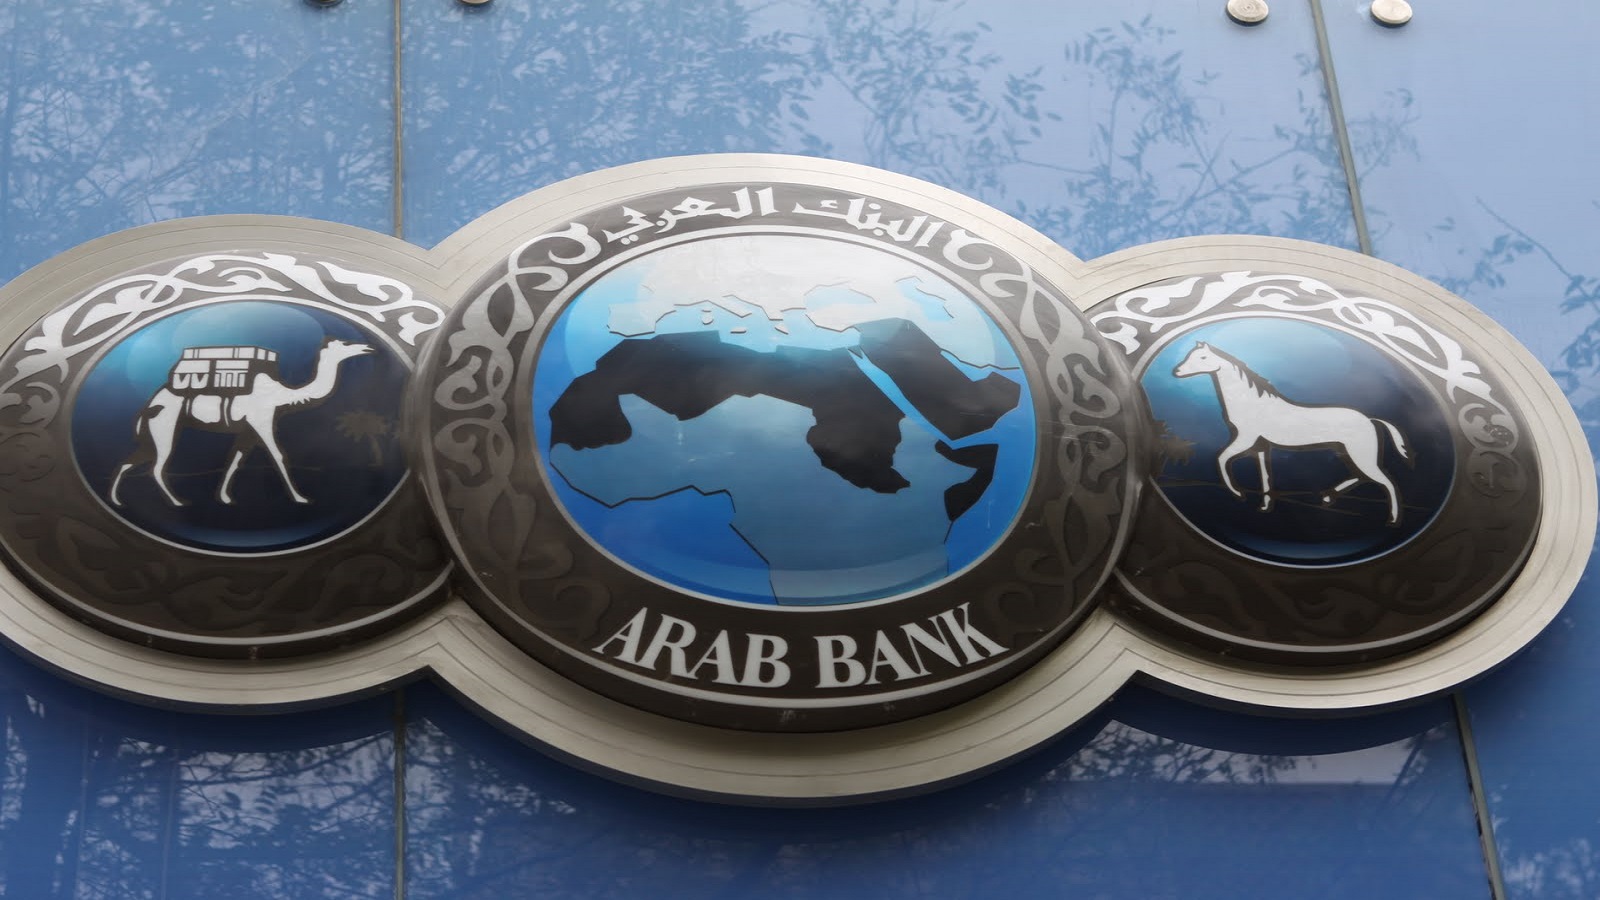 السعودية "تضرب" البنك العربي؟